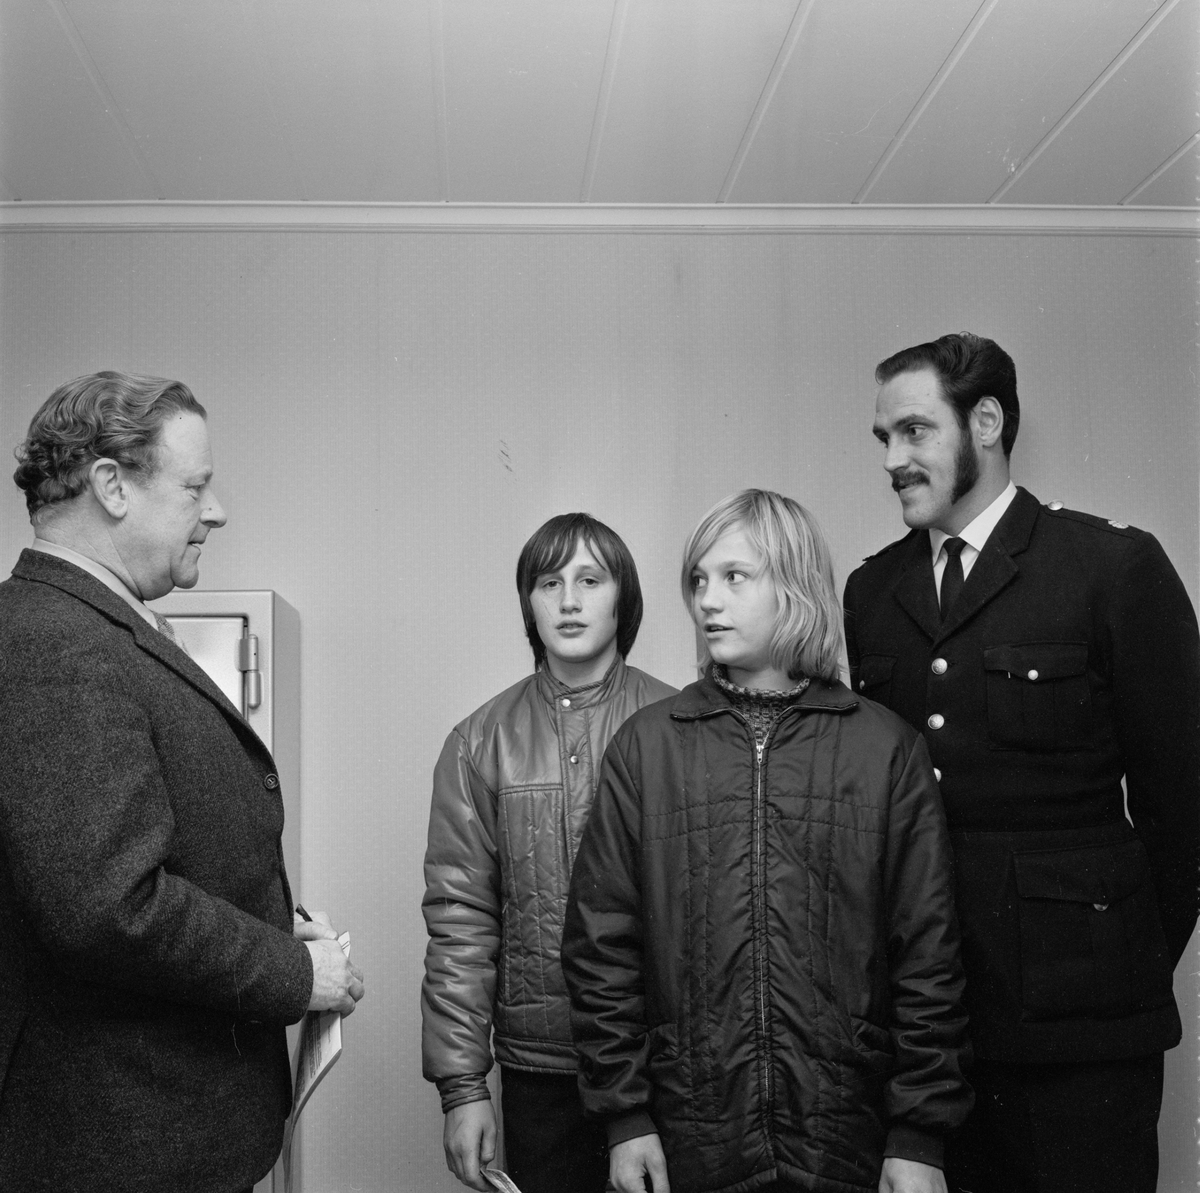 Pojkar belönade, stoppade rattfyllerist, Österby, Uppland, november 1971